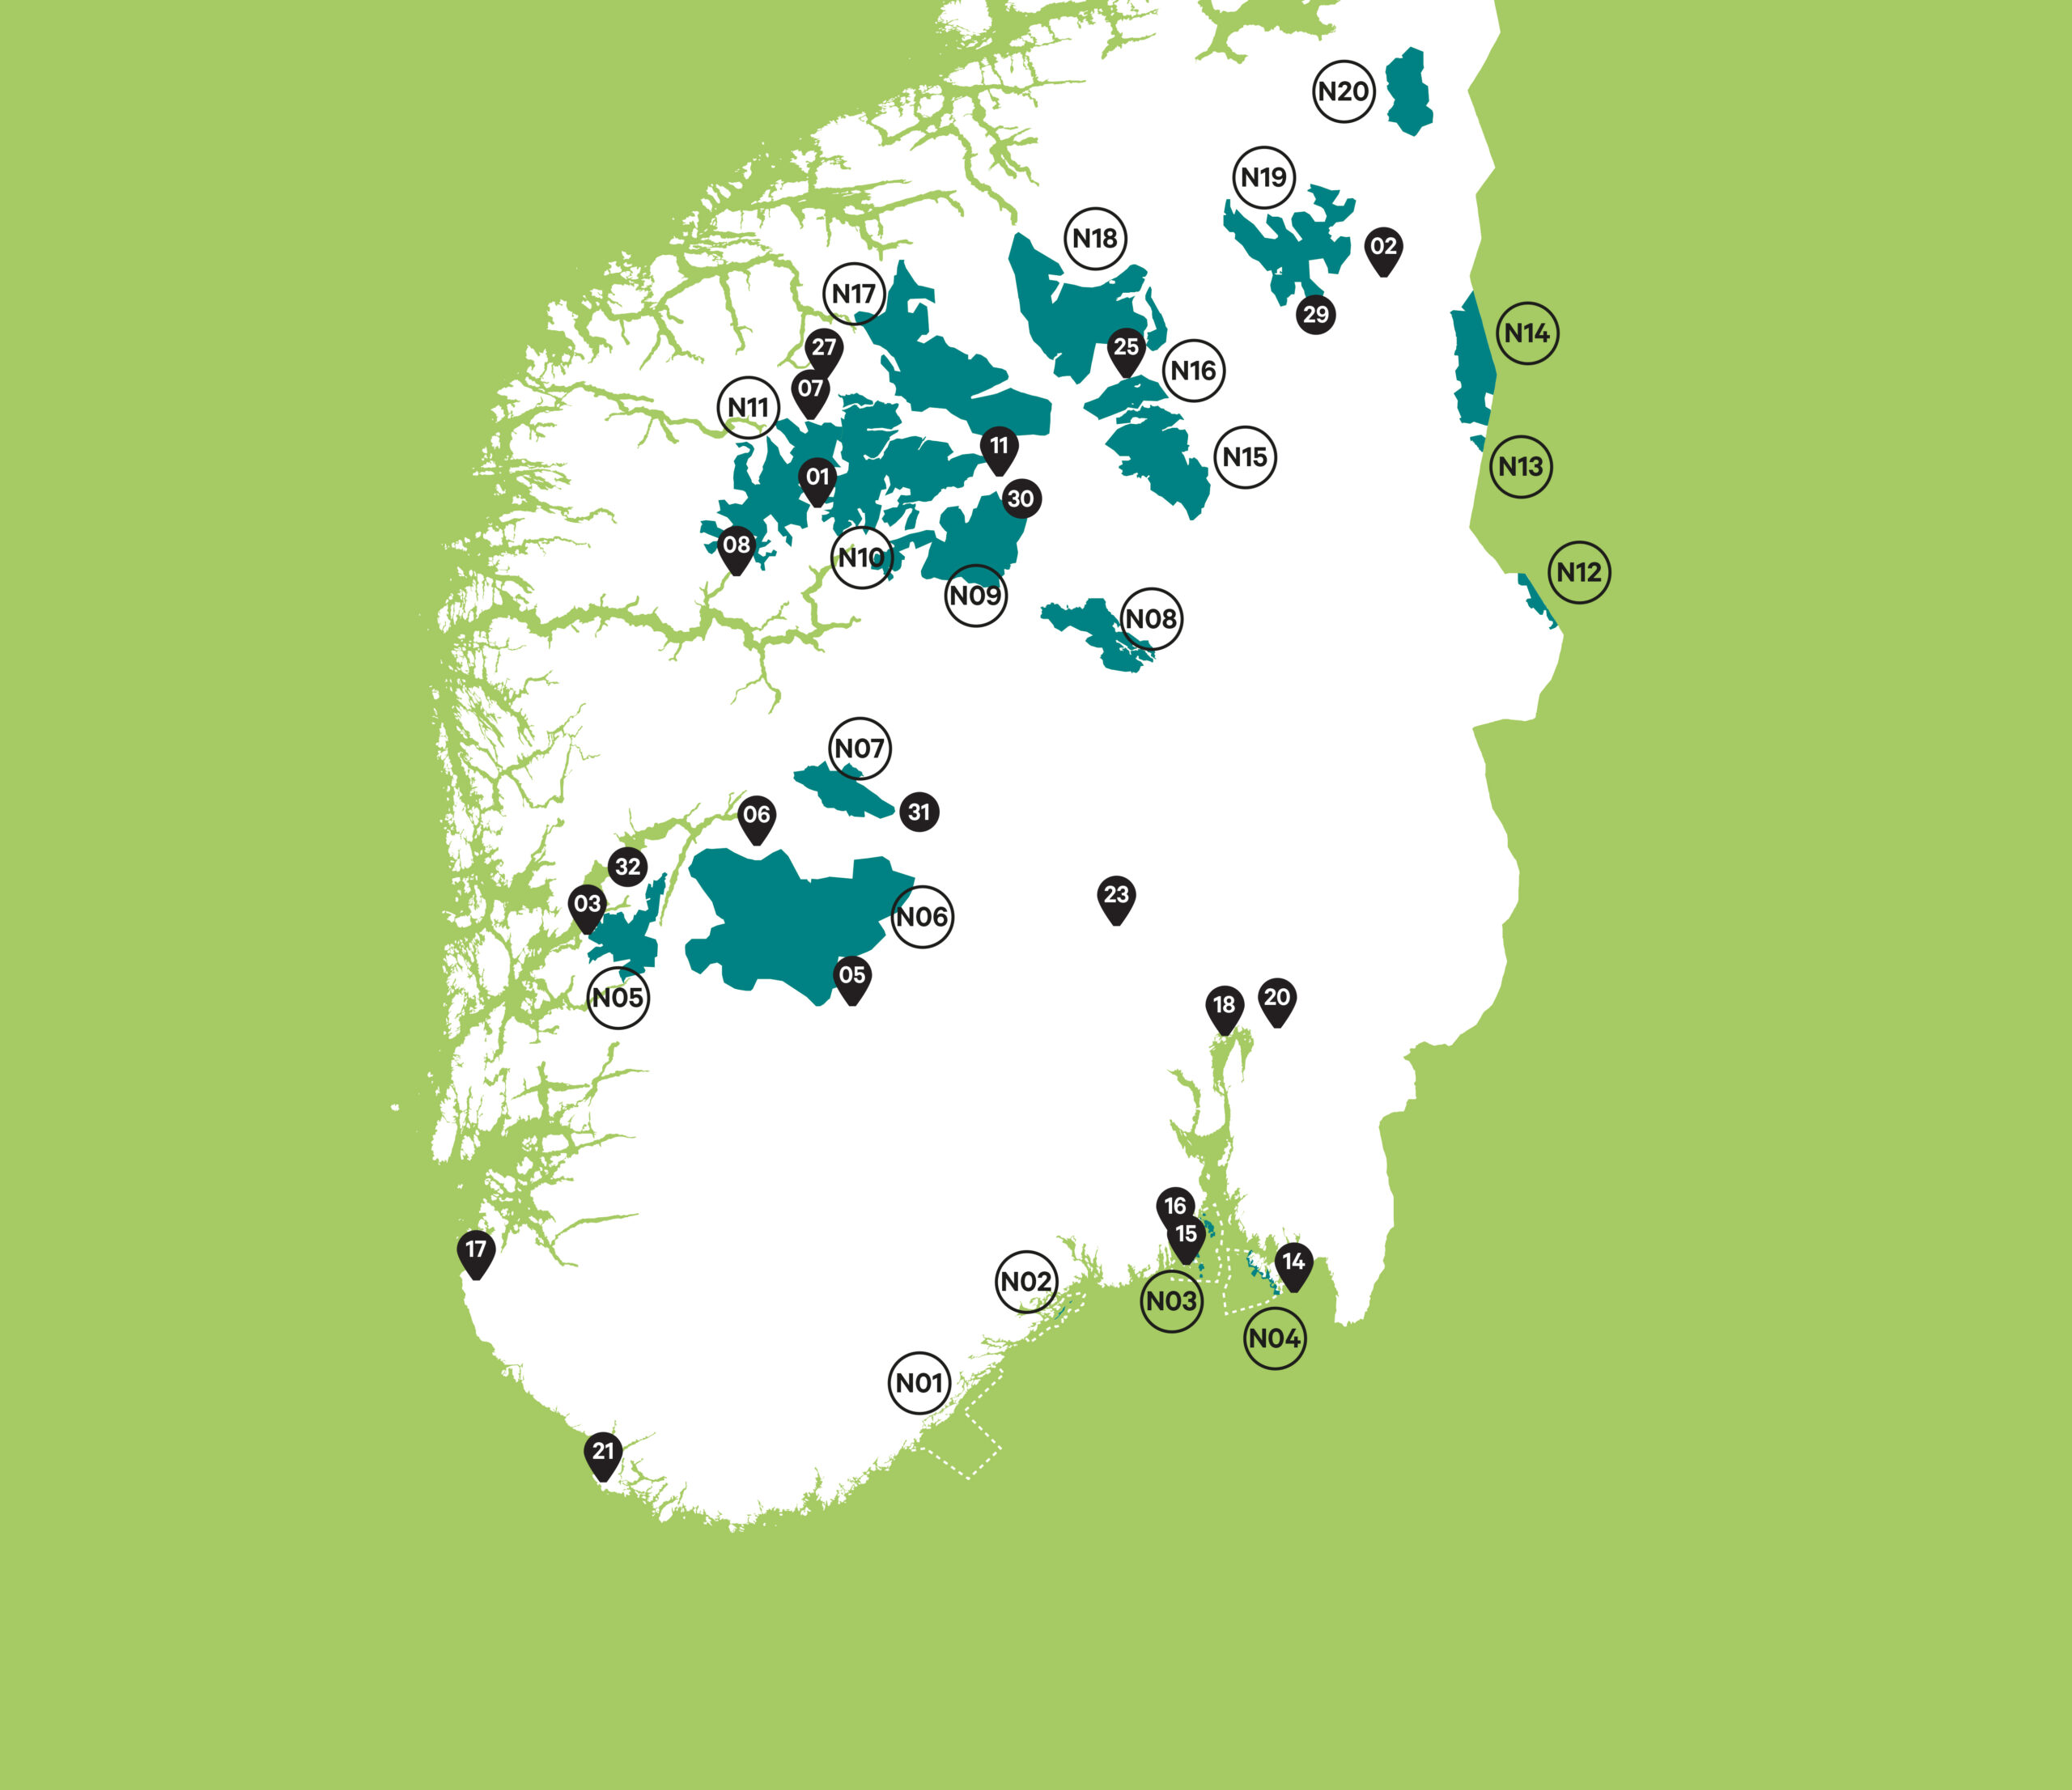 I 2011 fantes det ikke nasjonalparker i den sørøstlige delen av Norge, med unntak for den hovedsakelig marine Ytre Hvaler nasjonalpark (N04, etablert i 2009). På dette kartet fra 2023 ser vi også Færder nasjonalpark (N03 – 2013), Raet nasjonalpark (N01 – 2016) og Jomfruland nasjonalpark (N02 – 2016).